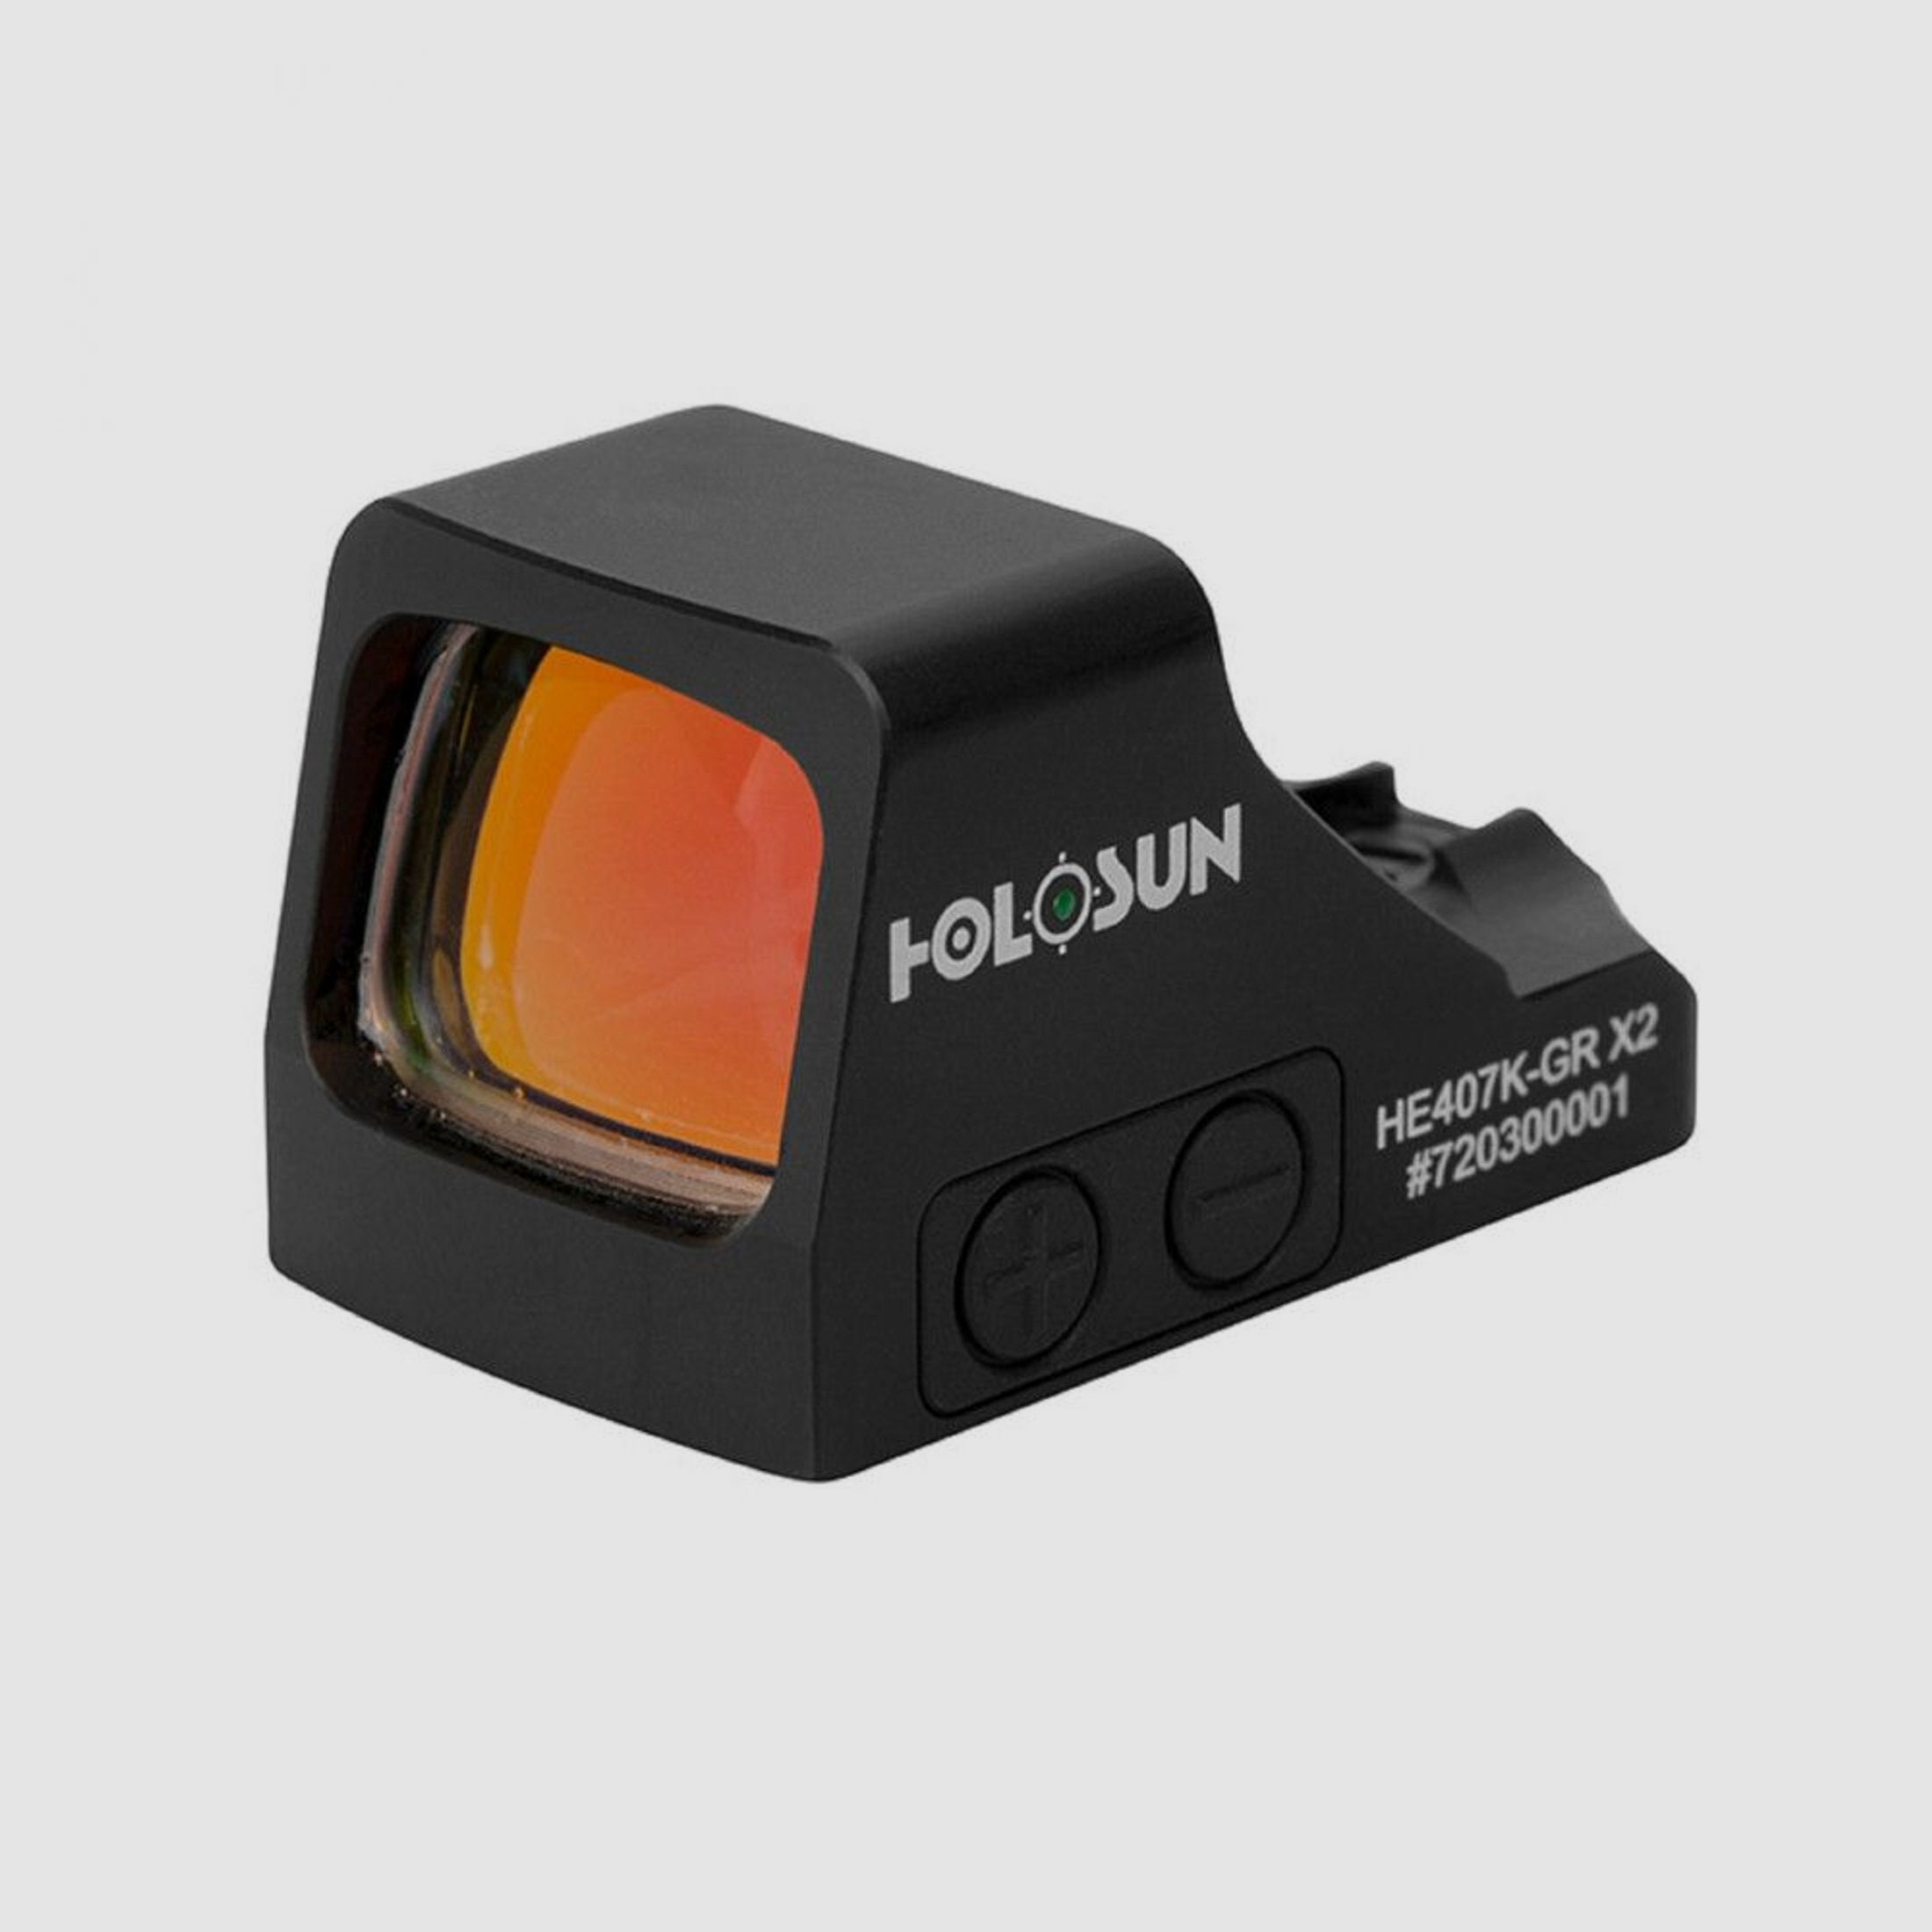 Holosun HE407K-GR-X2 Leuchtpunktvisier